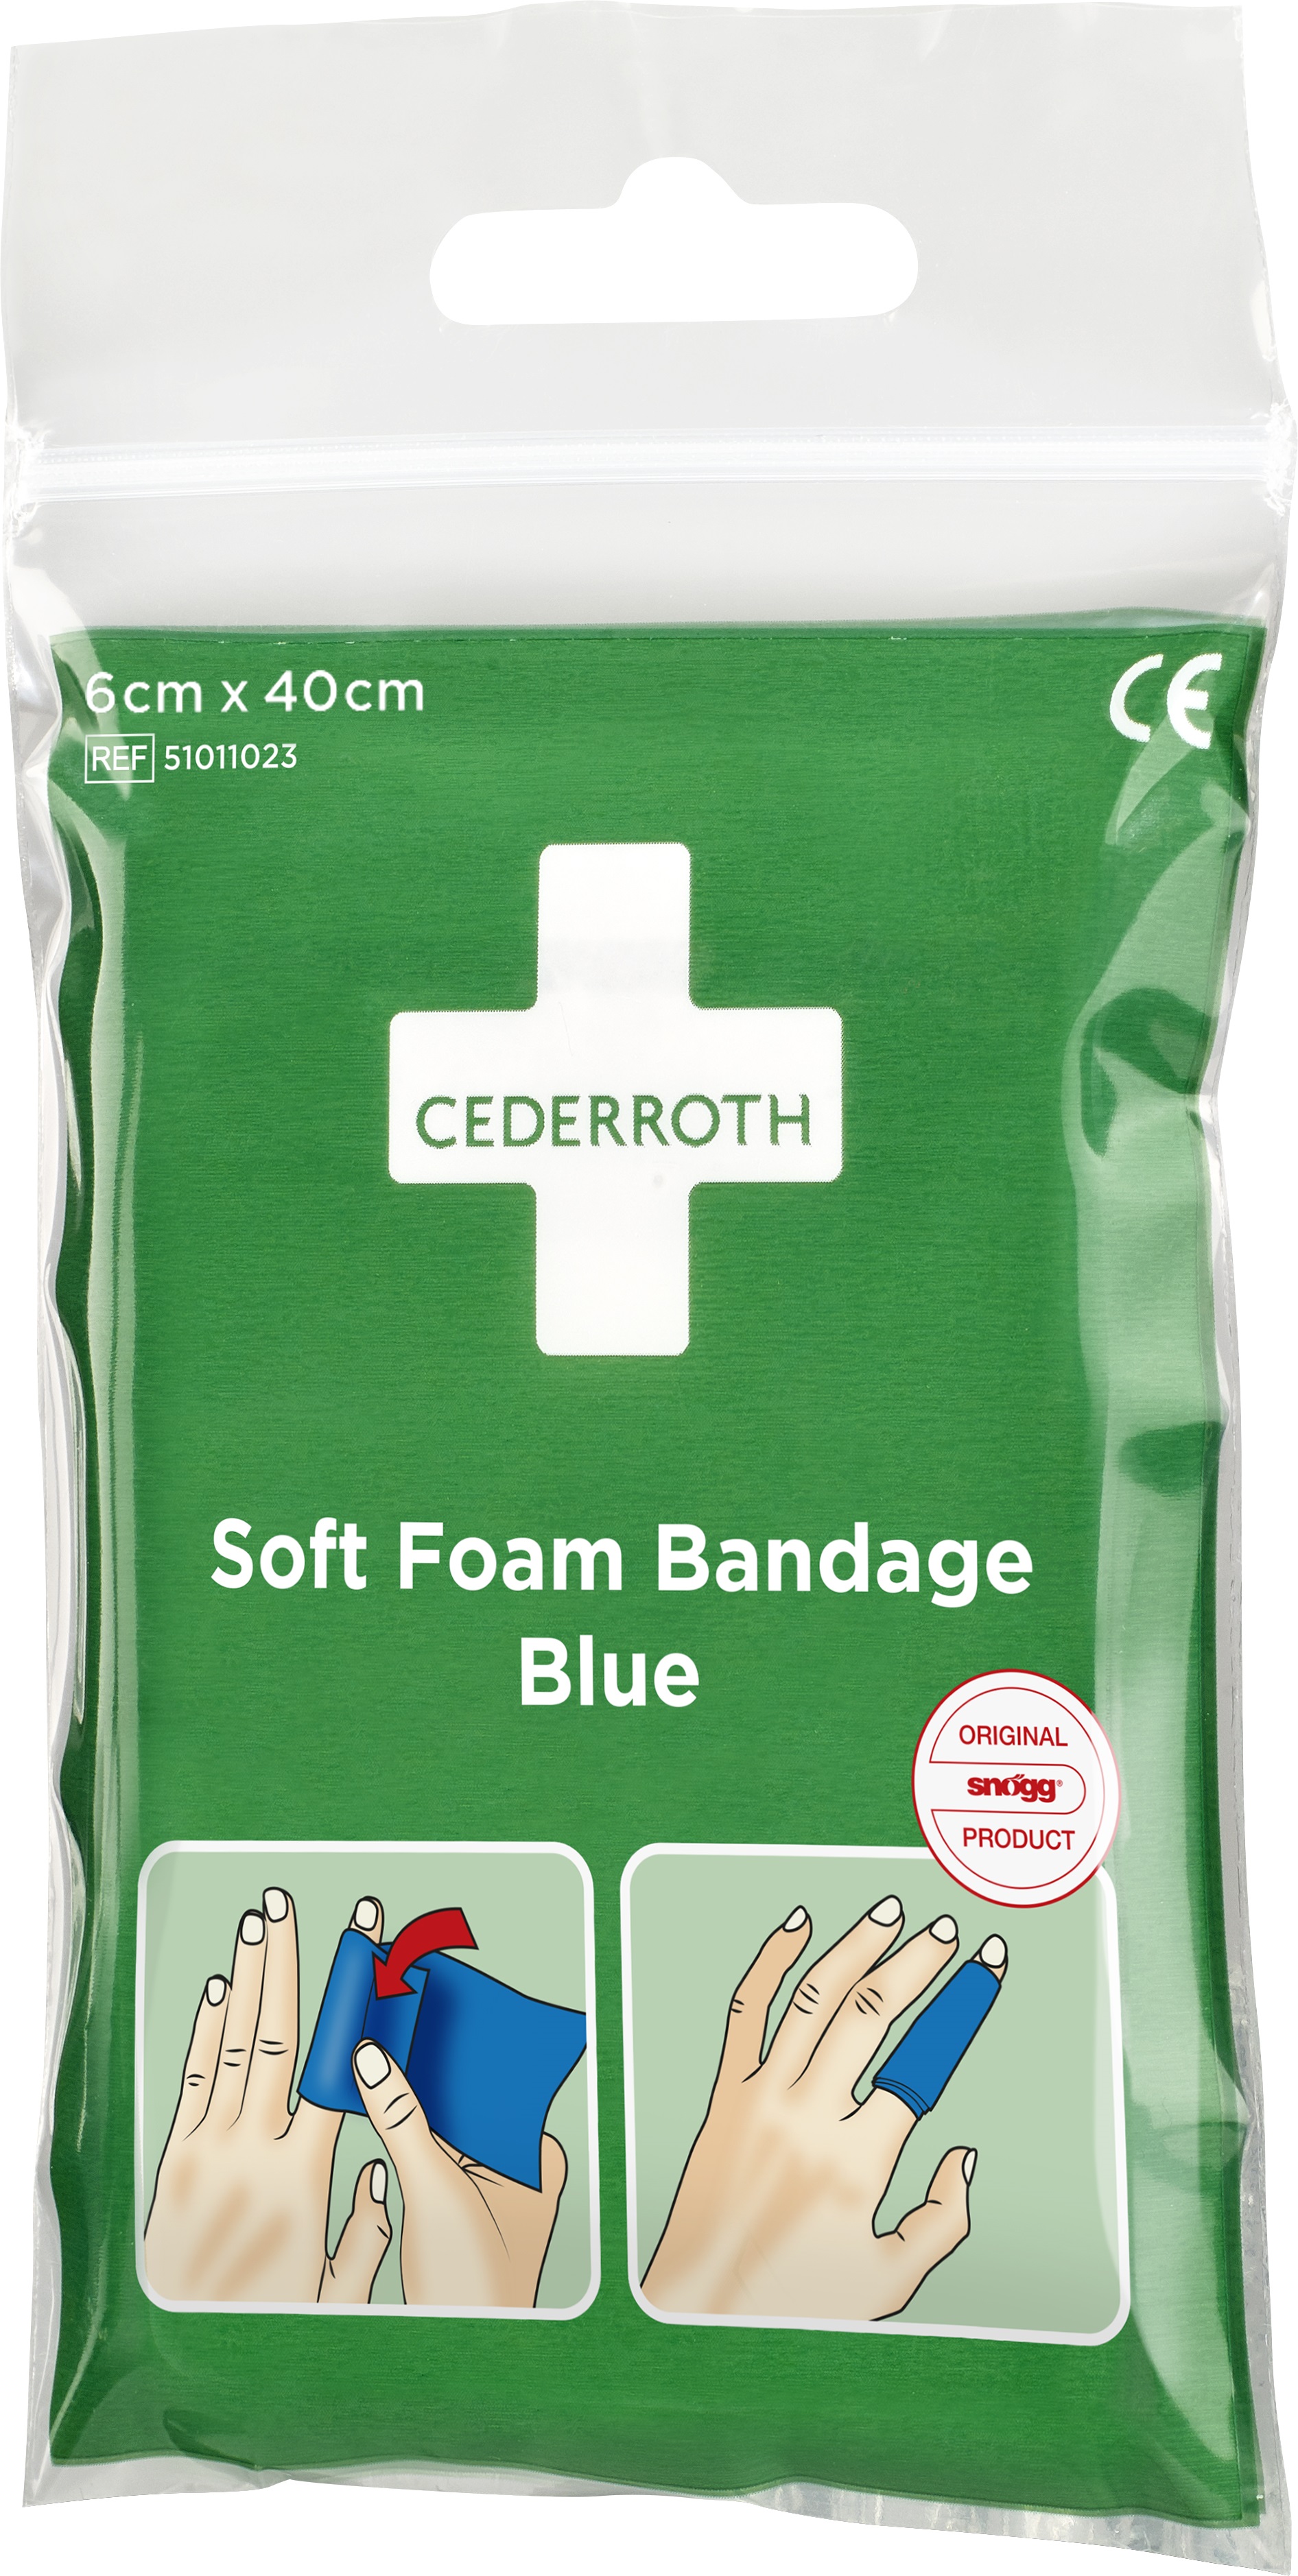 Soft foam bandage Cederroth 51011023